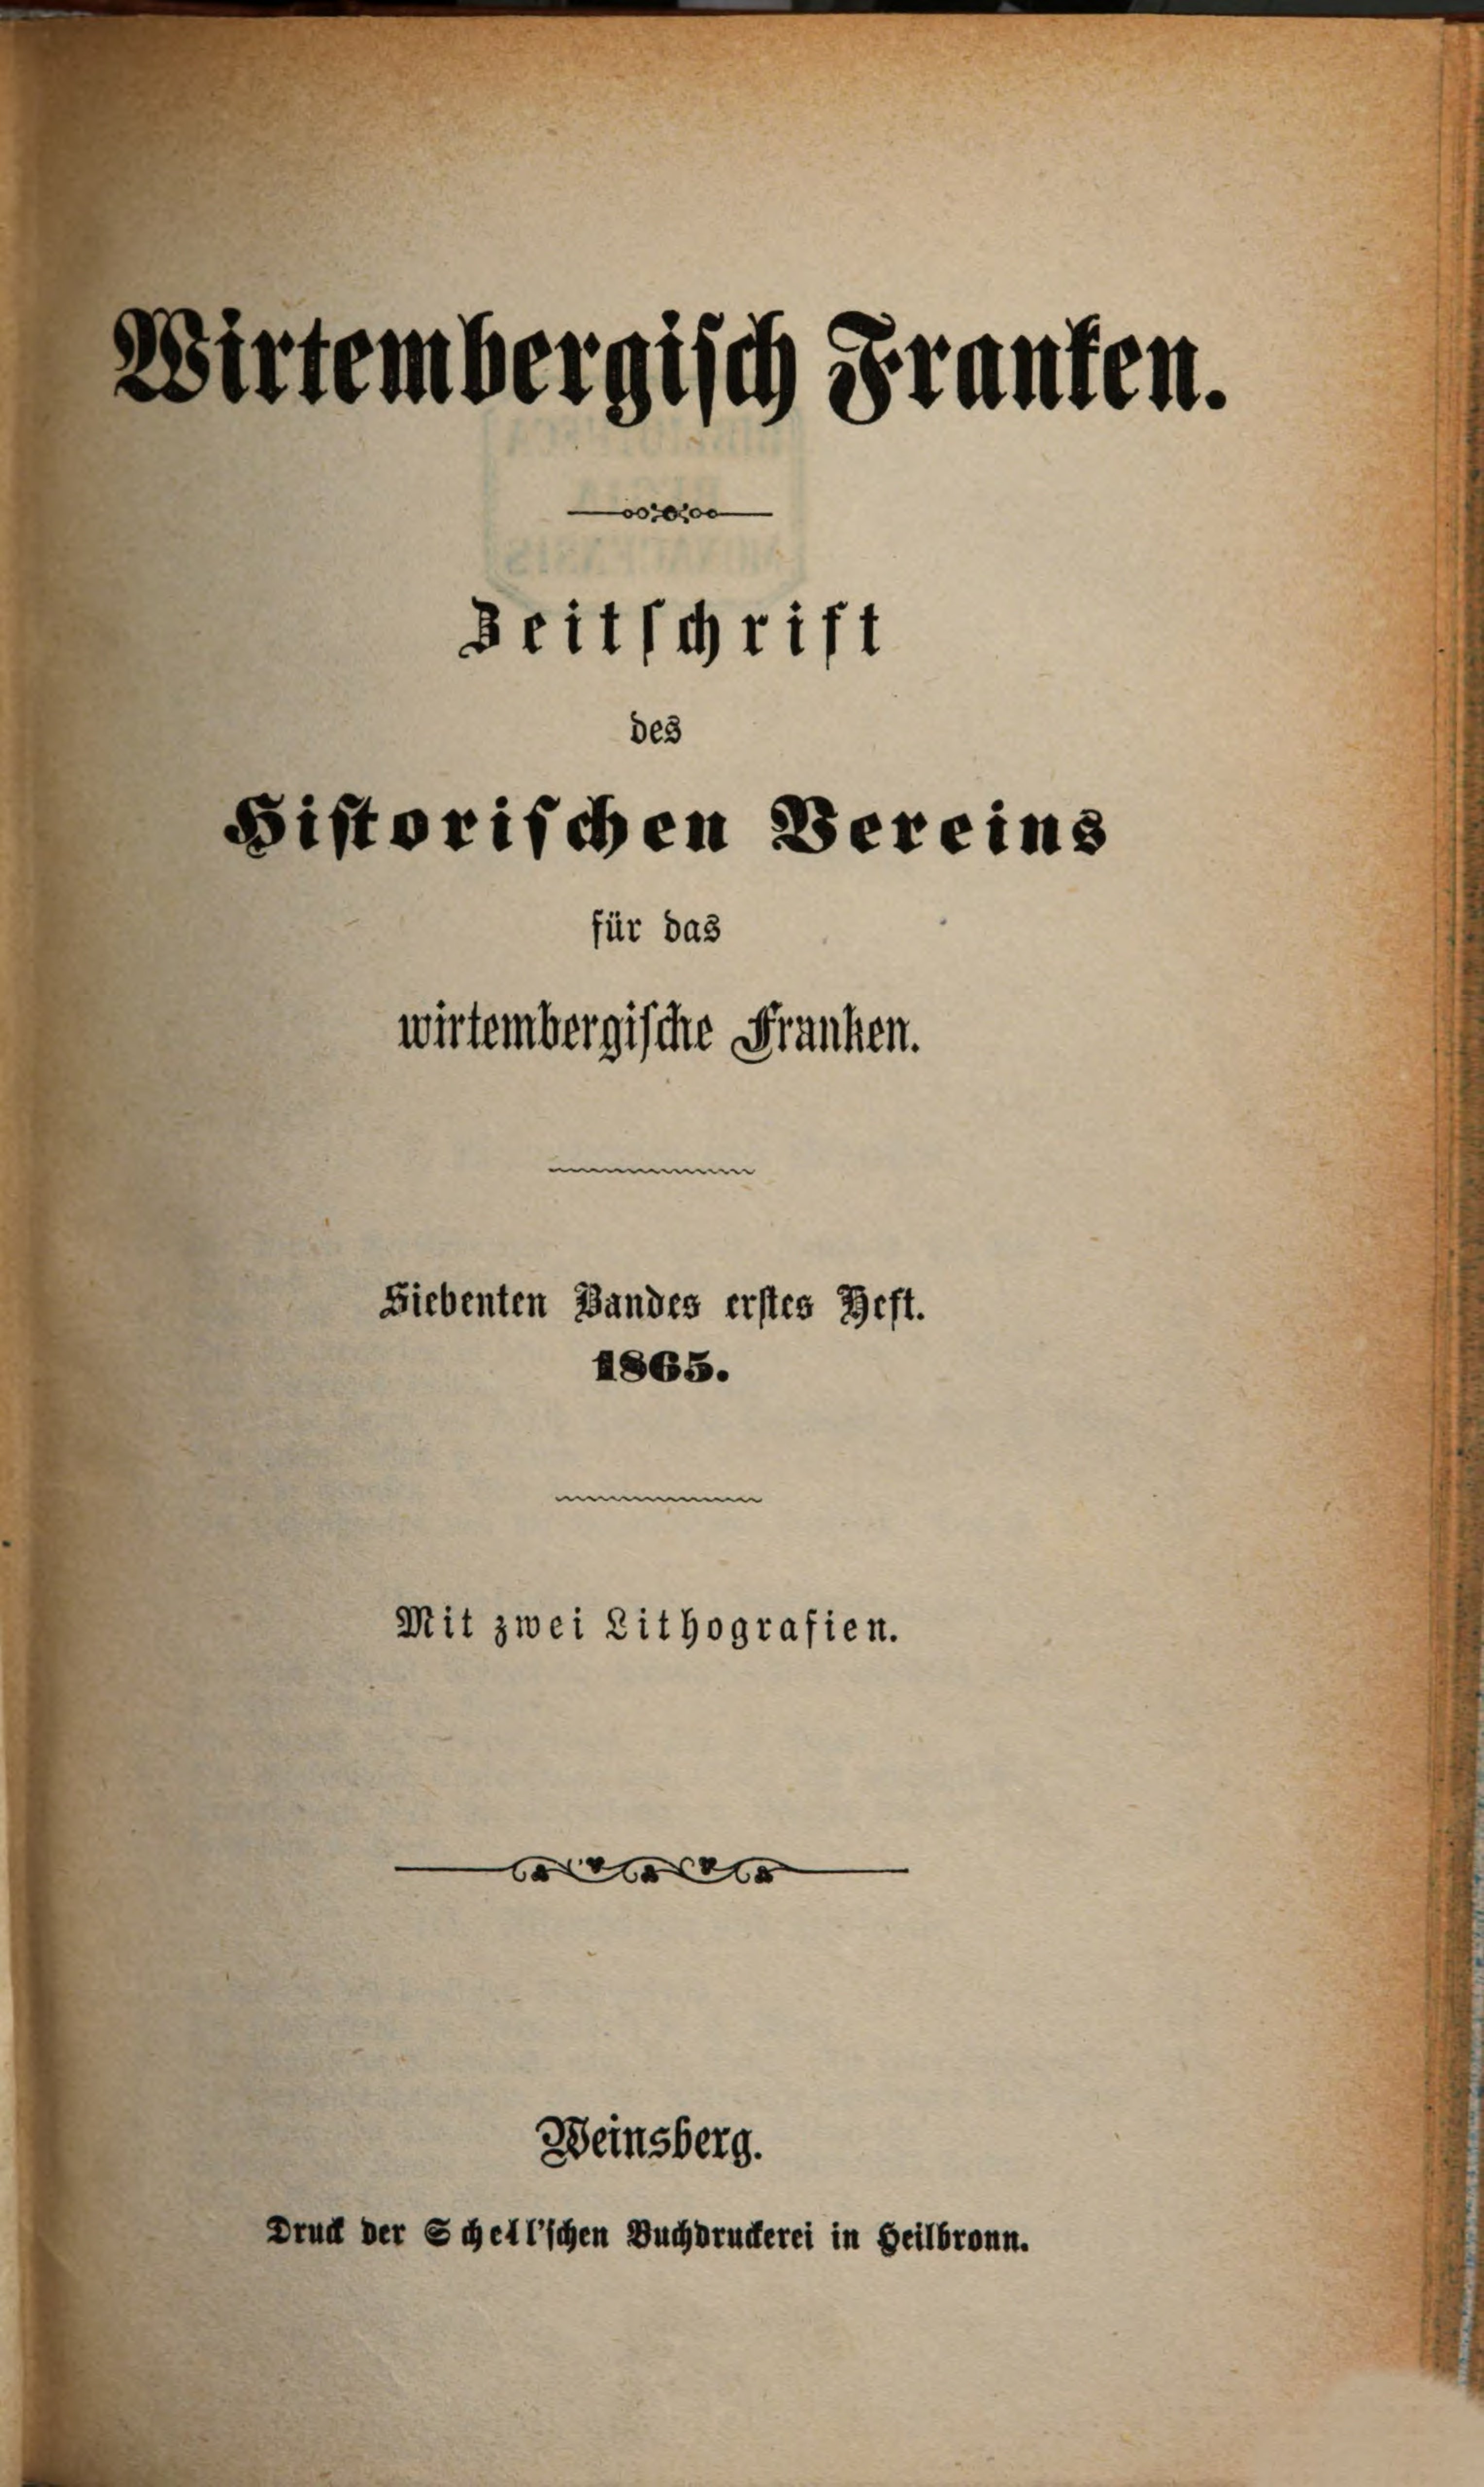                     Ansehen Bd. 7 Nr. 1 (1865): Zeitschrift des Historischen Vereins für das Württembergische Franken 
                